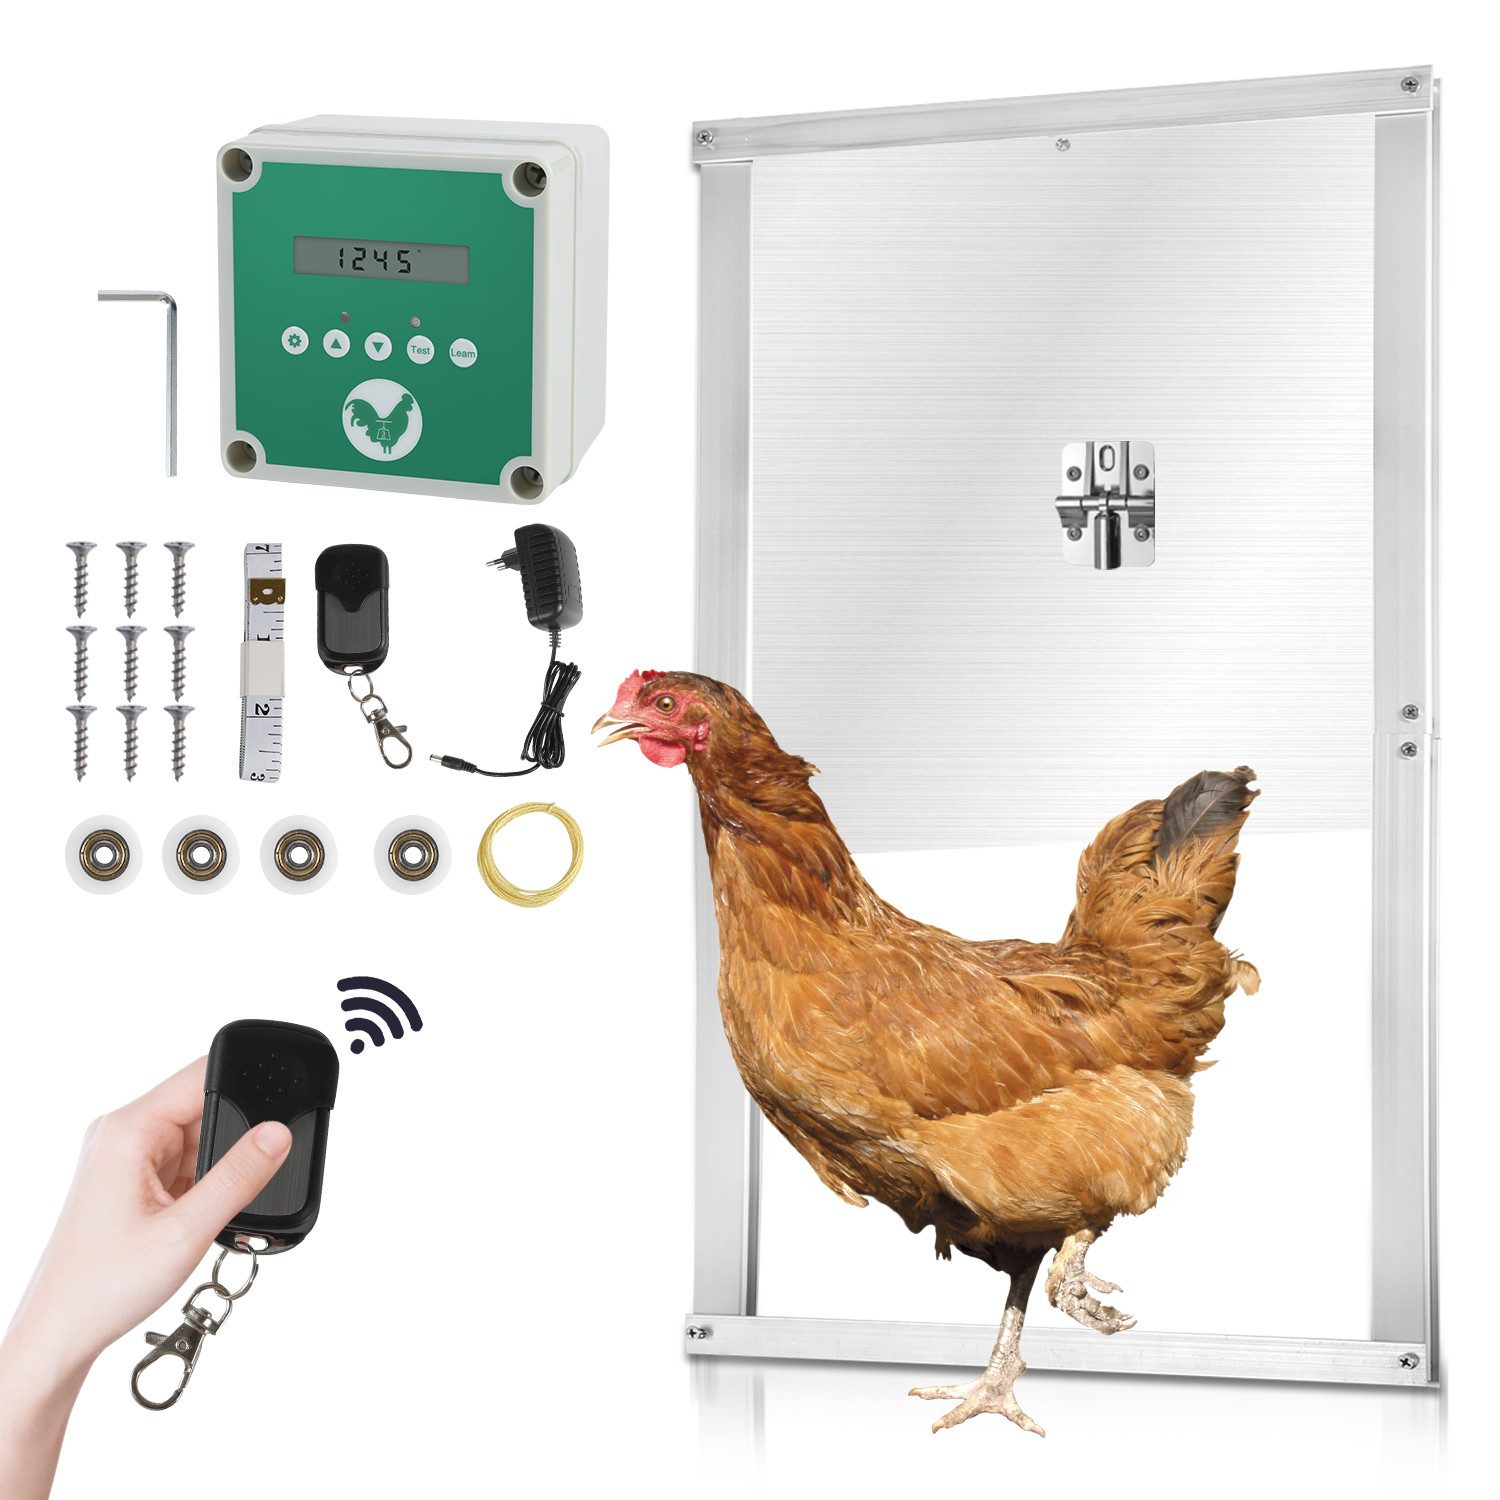 Clanmacy Hühnerstall Hühnerklappe Türöffner Fernbedienung Aluminum Hühnertür Automatische